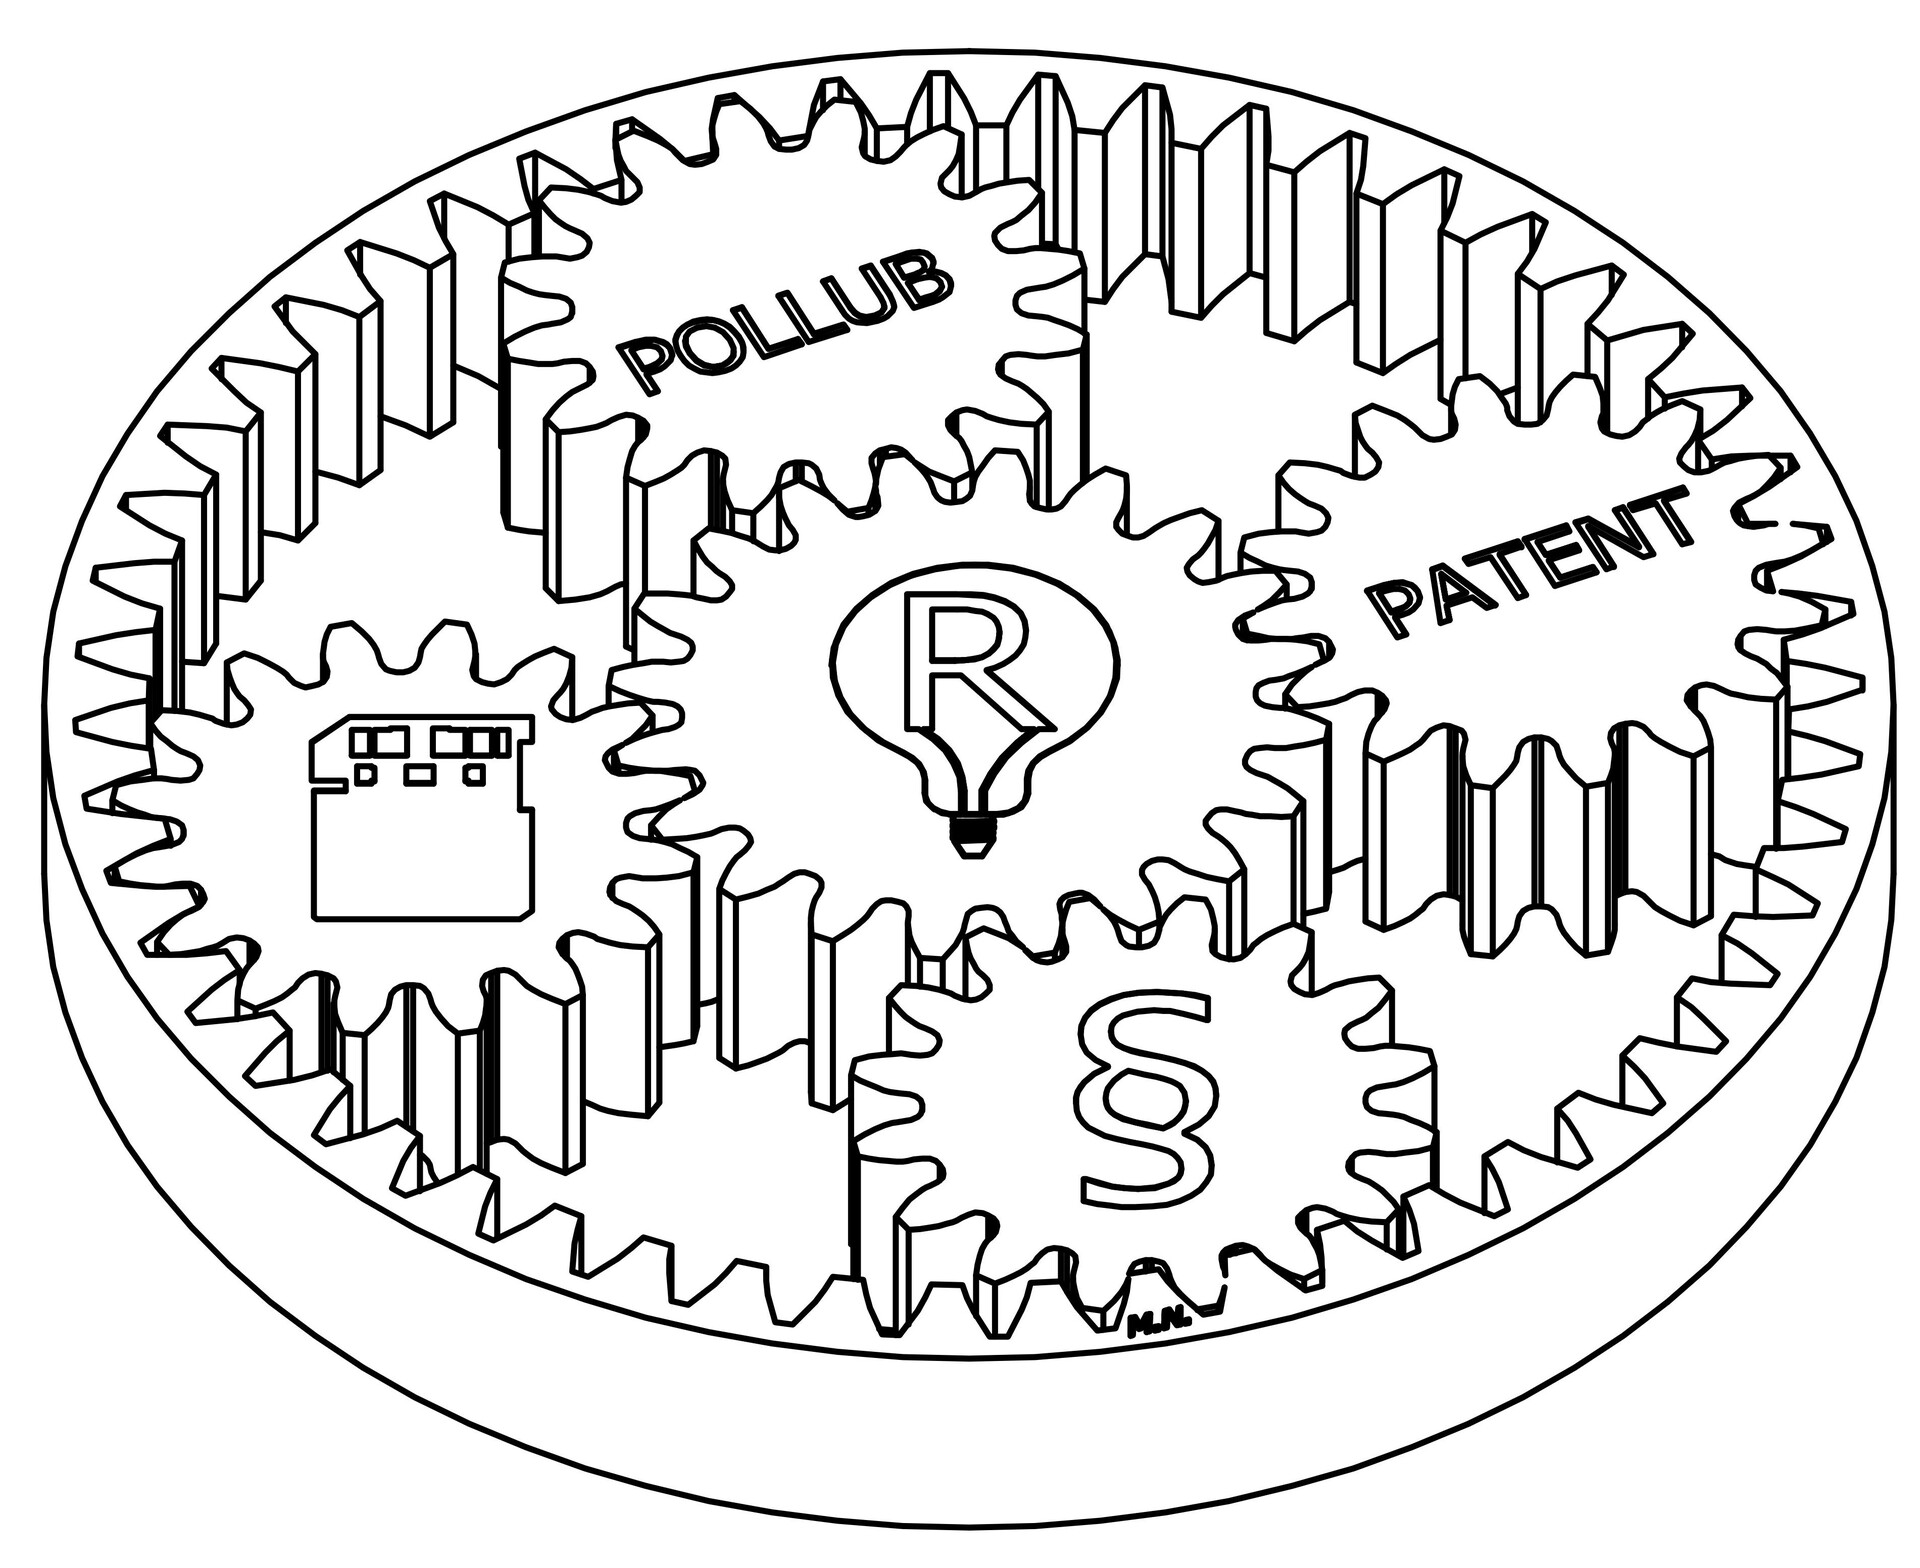 pollub_patent2400_dpi.jpg